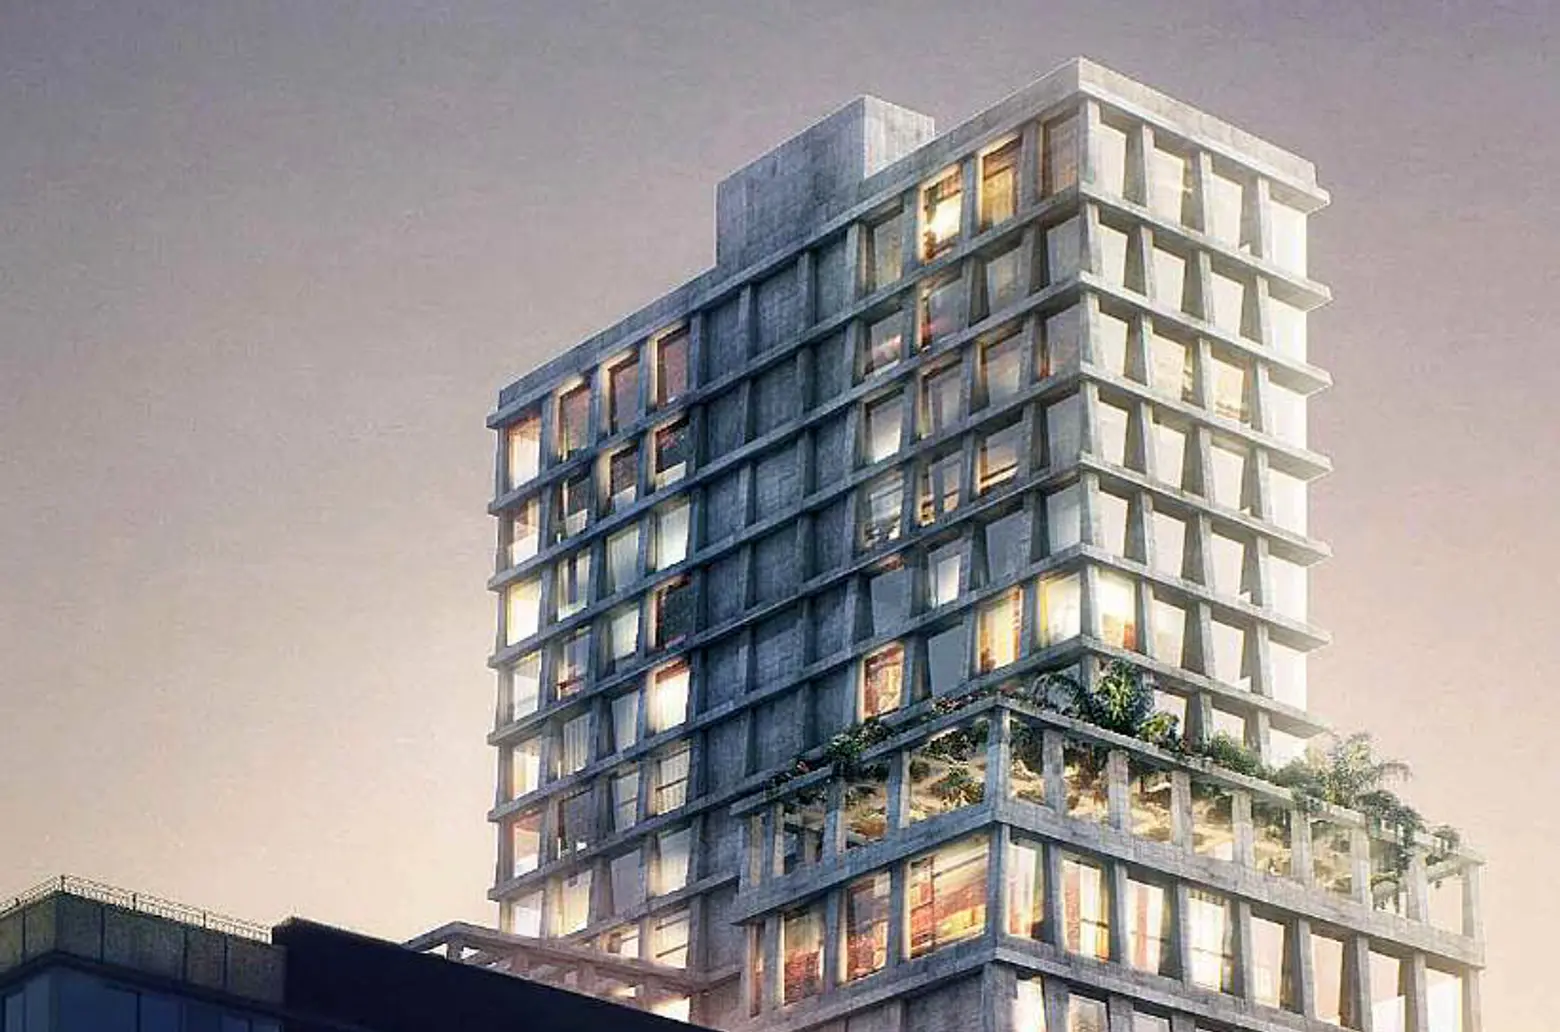 NYC Condos, Manhattan developments, New York construction, Manhattan condos, Herzog and de Meuron, WHole Foods